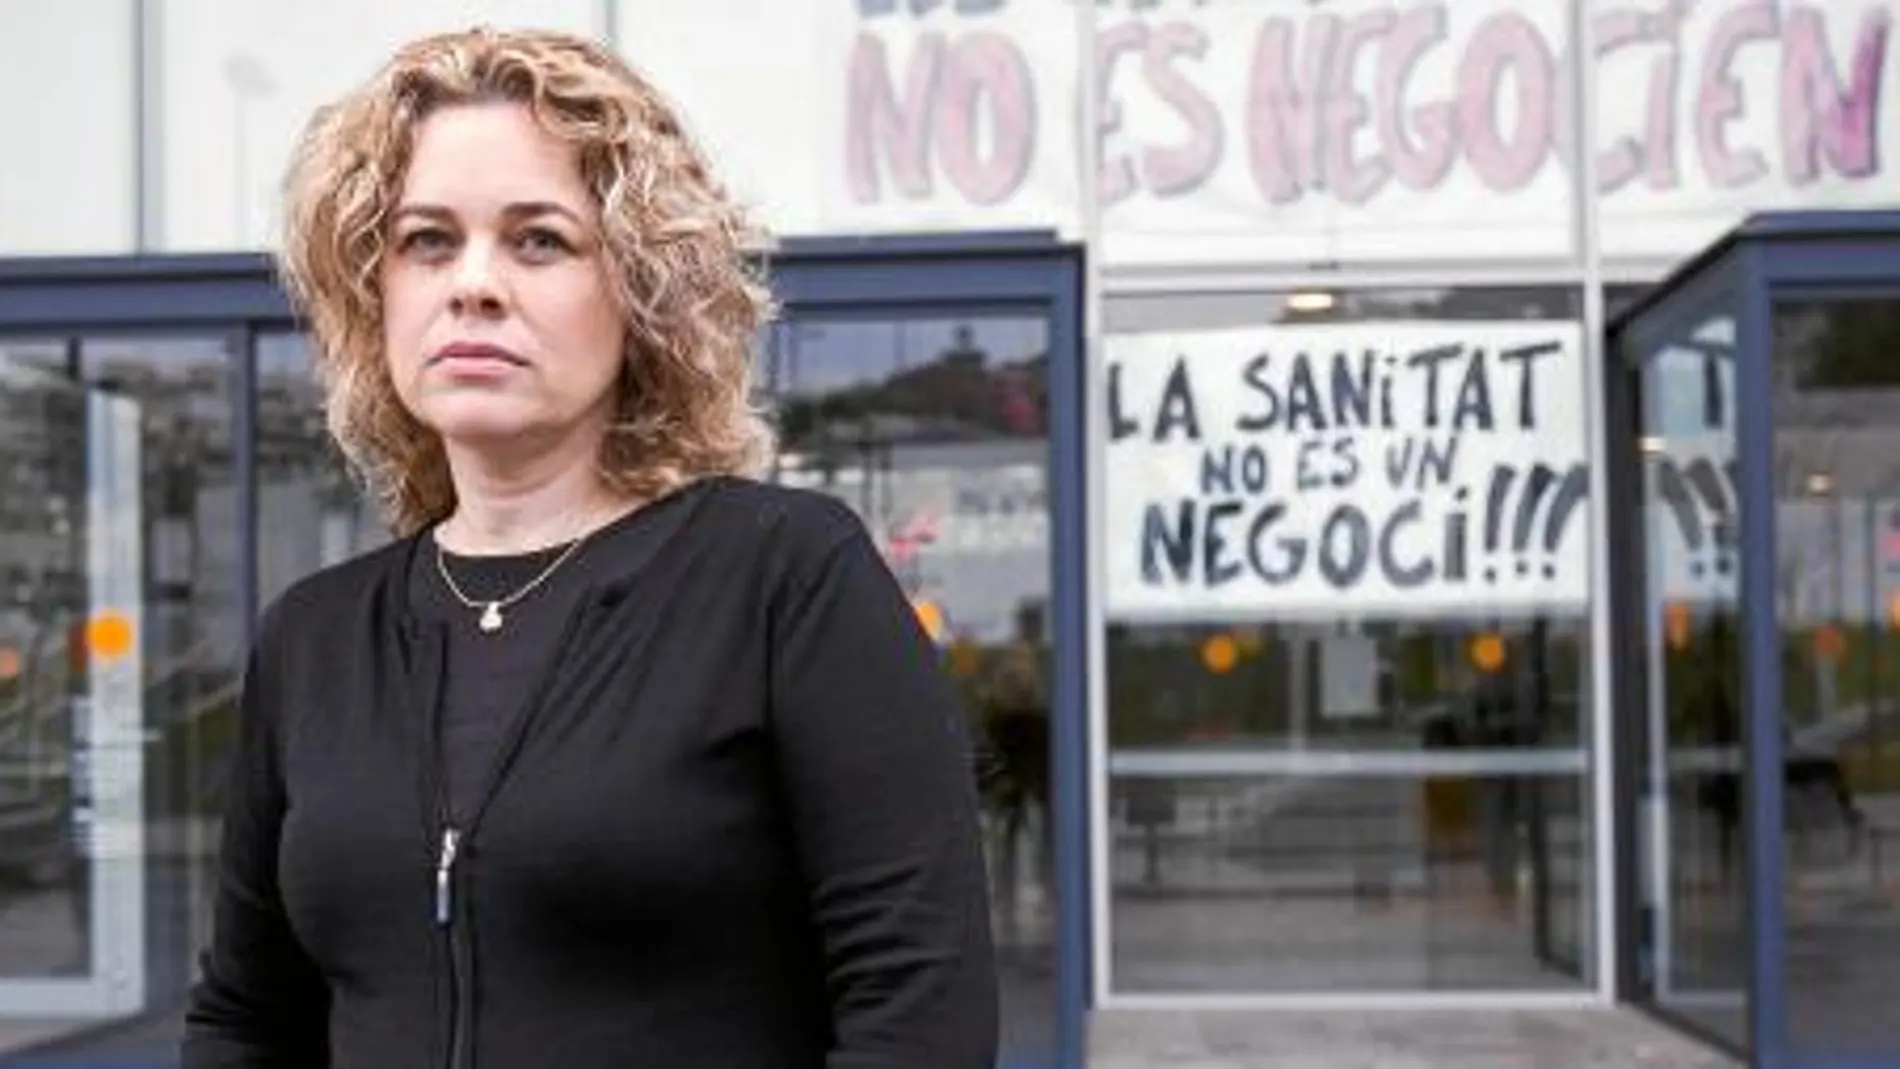 «Mi madre murió tras pasar nueve horas en Urgencias del Hospital Sant Pau. No es normal esperar tanto», asegura Consuelo Muñoz. El Hospital asegura que atendió a la paciente «de inmediato».